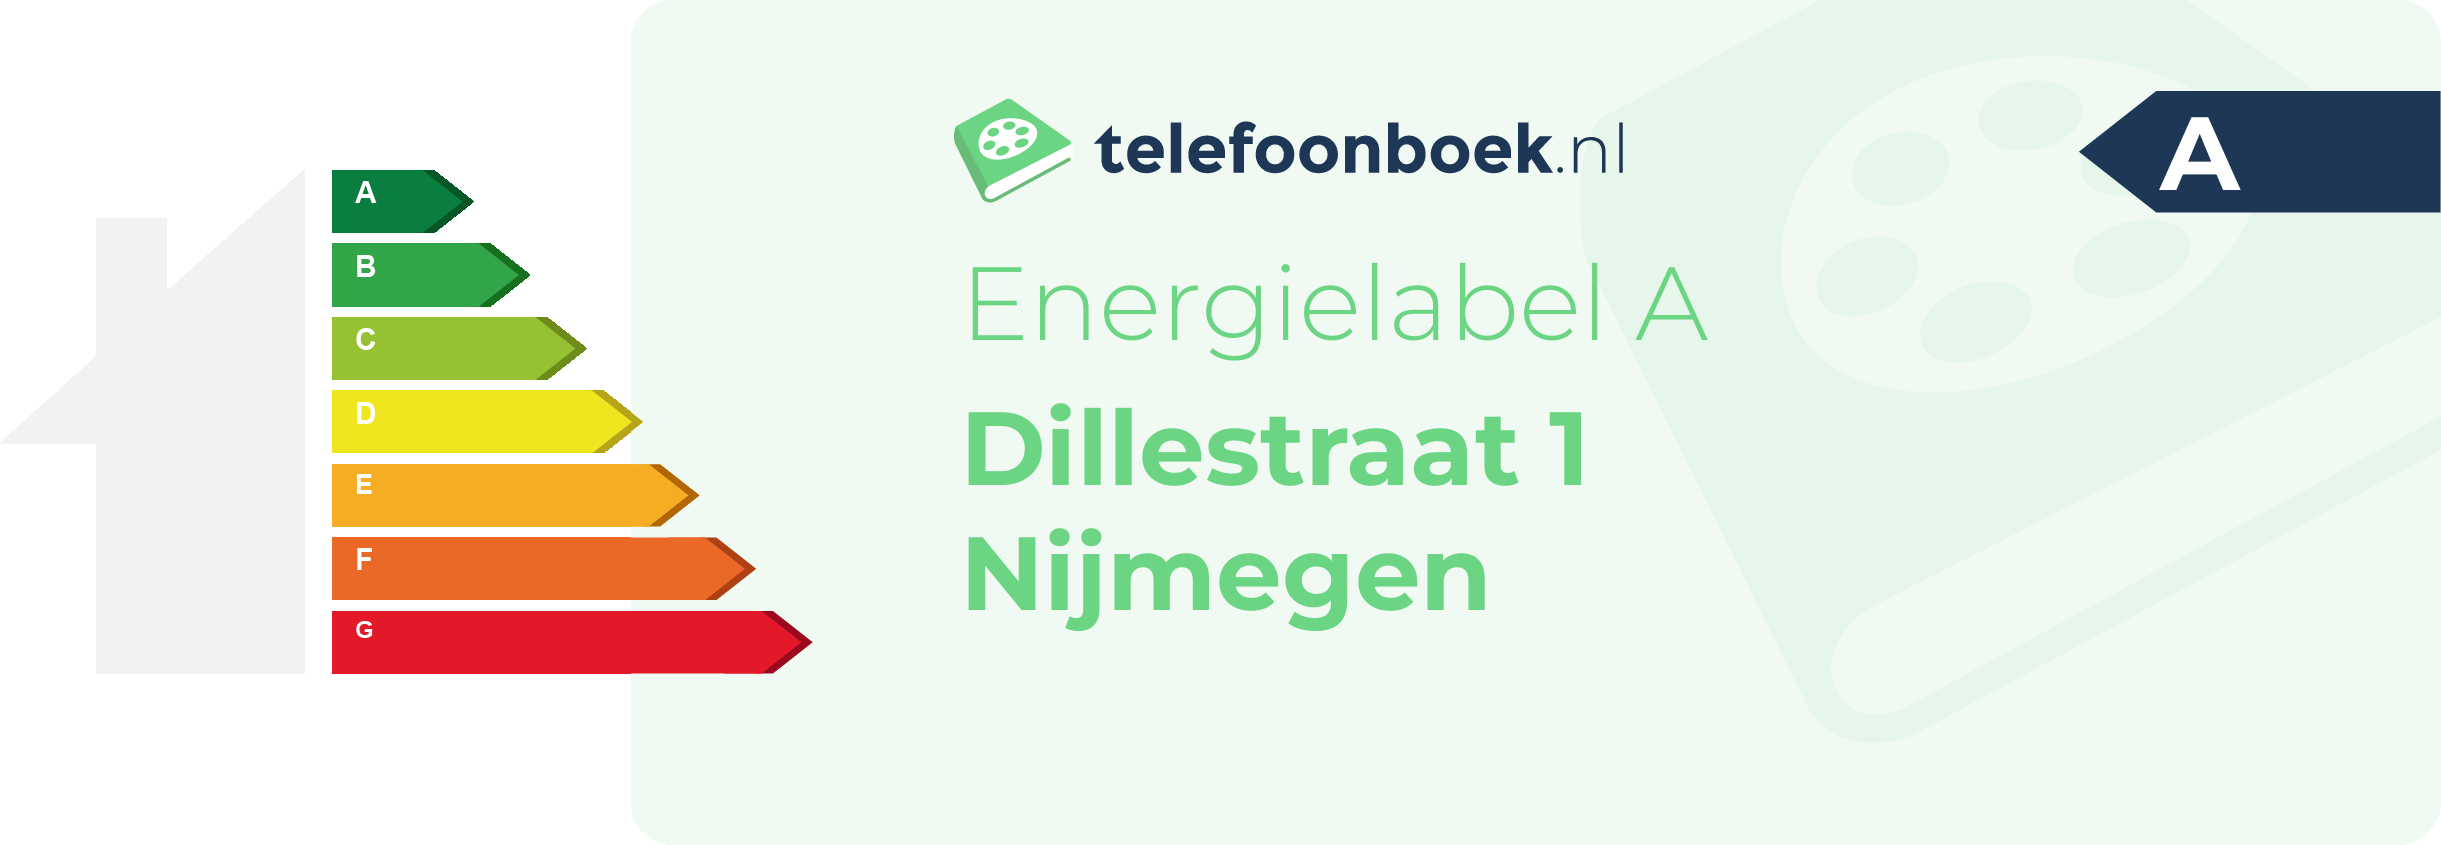 Energielabel Dillestraat 1 Nijmegen